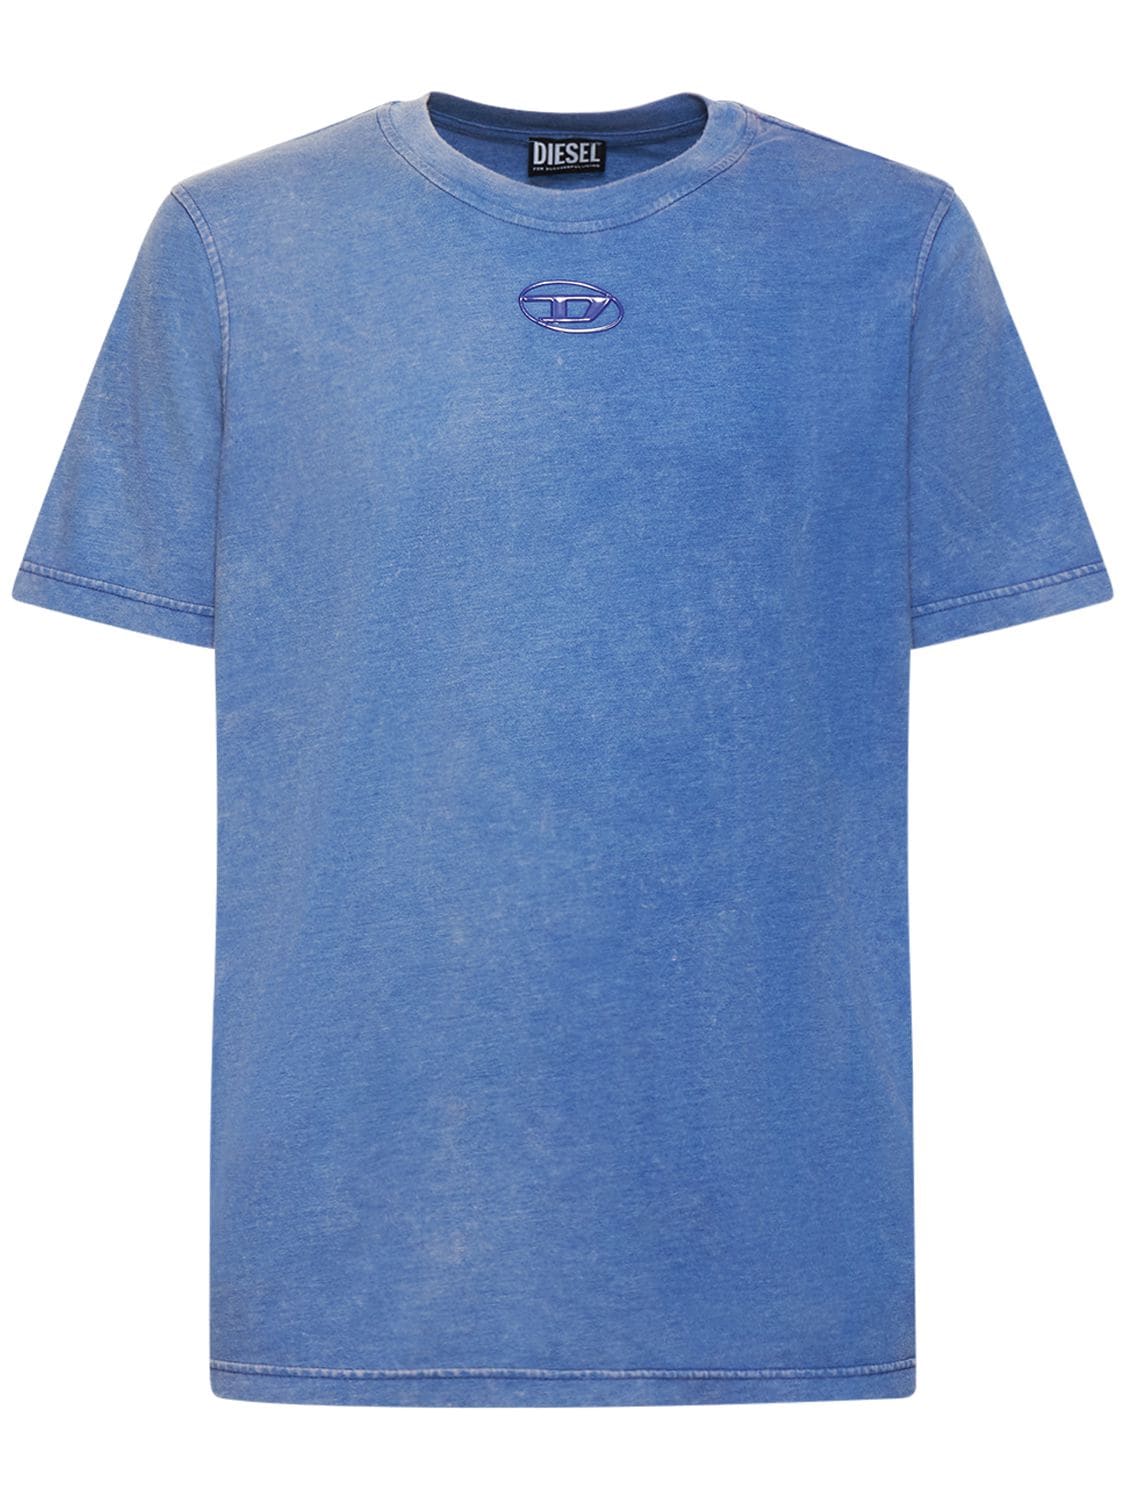 T-shirt Oval-d In Misto Cotone Con Stampa - DIESEL - Modalova